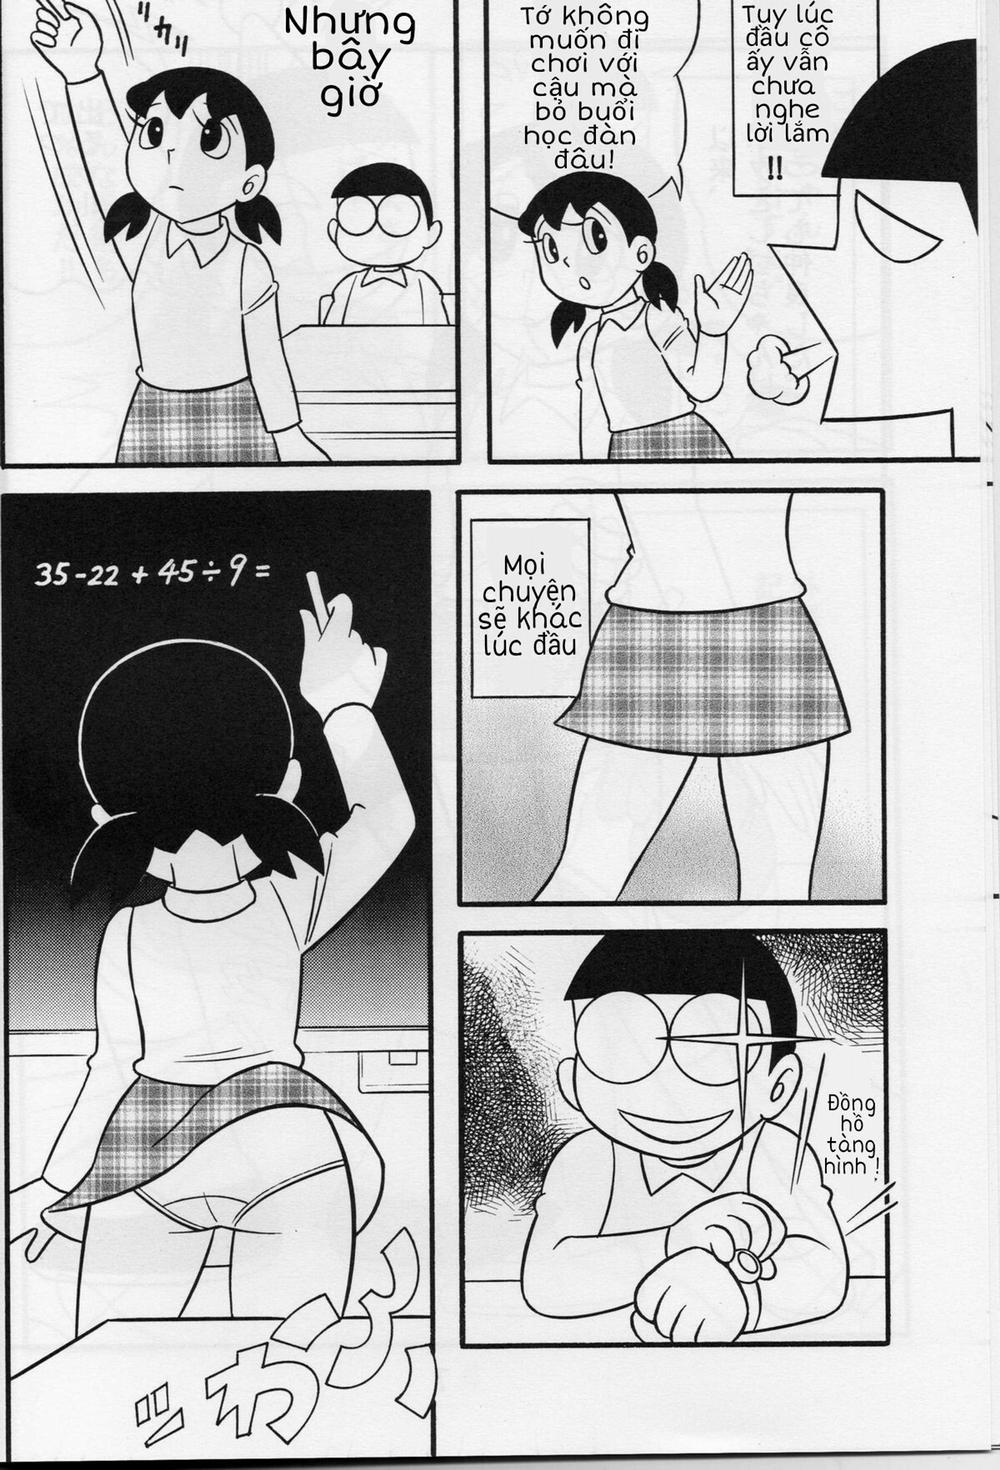 Tuyển Tập Doraemon Doujinshi 18+ Chương 1 M u c a t t c Trang 7